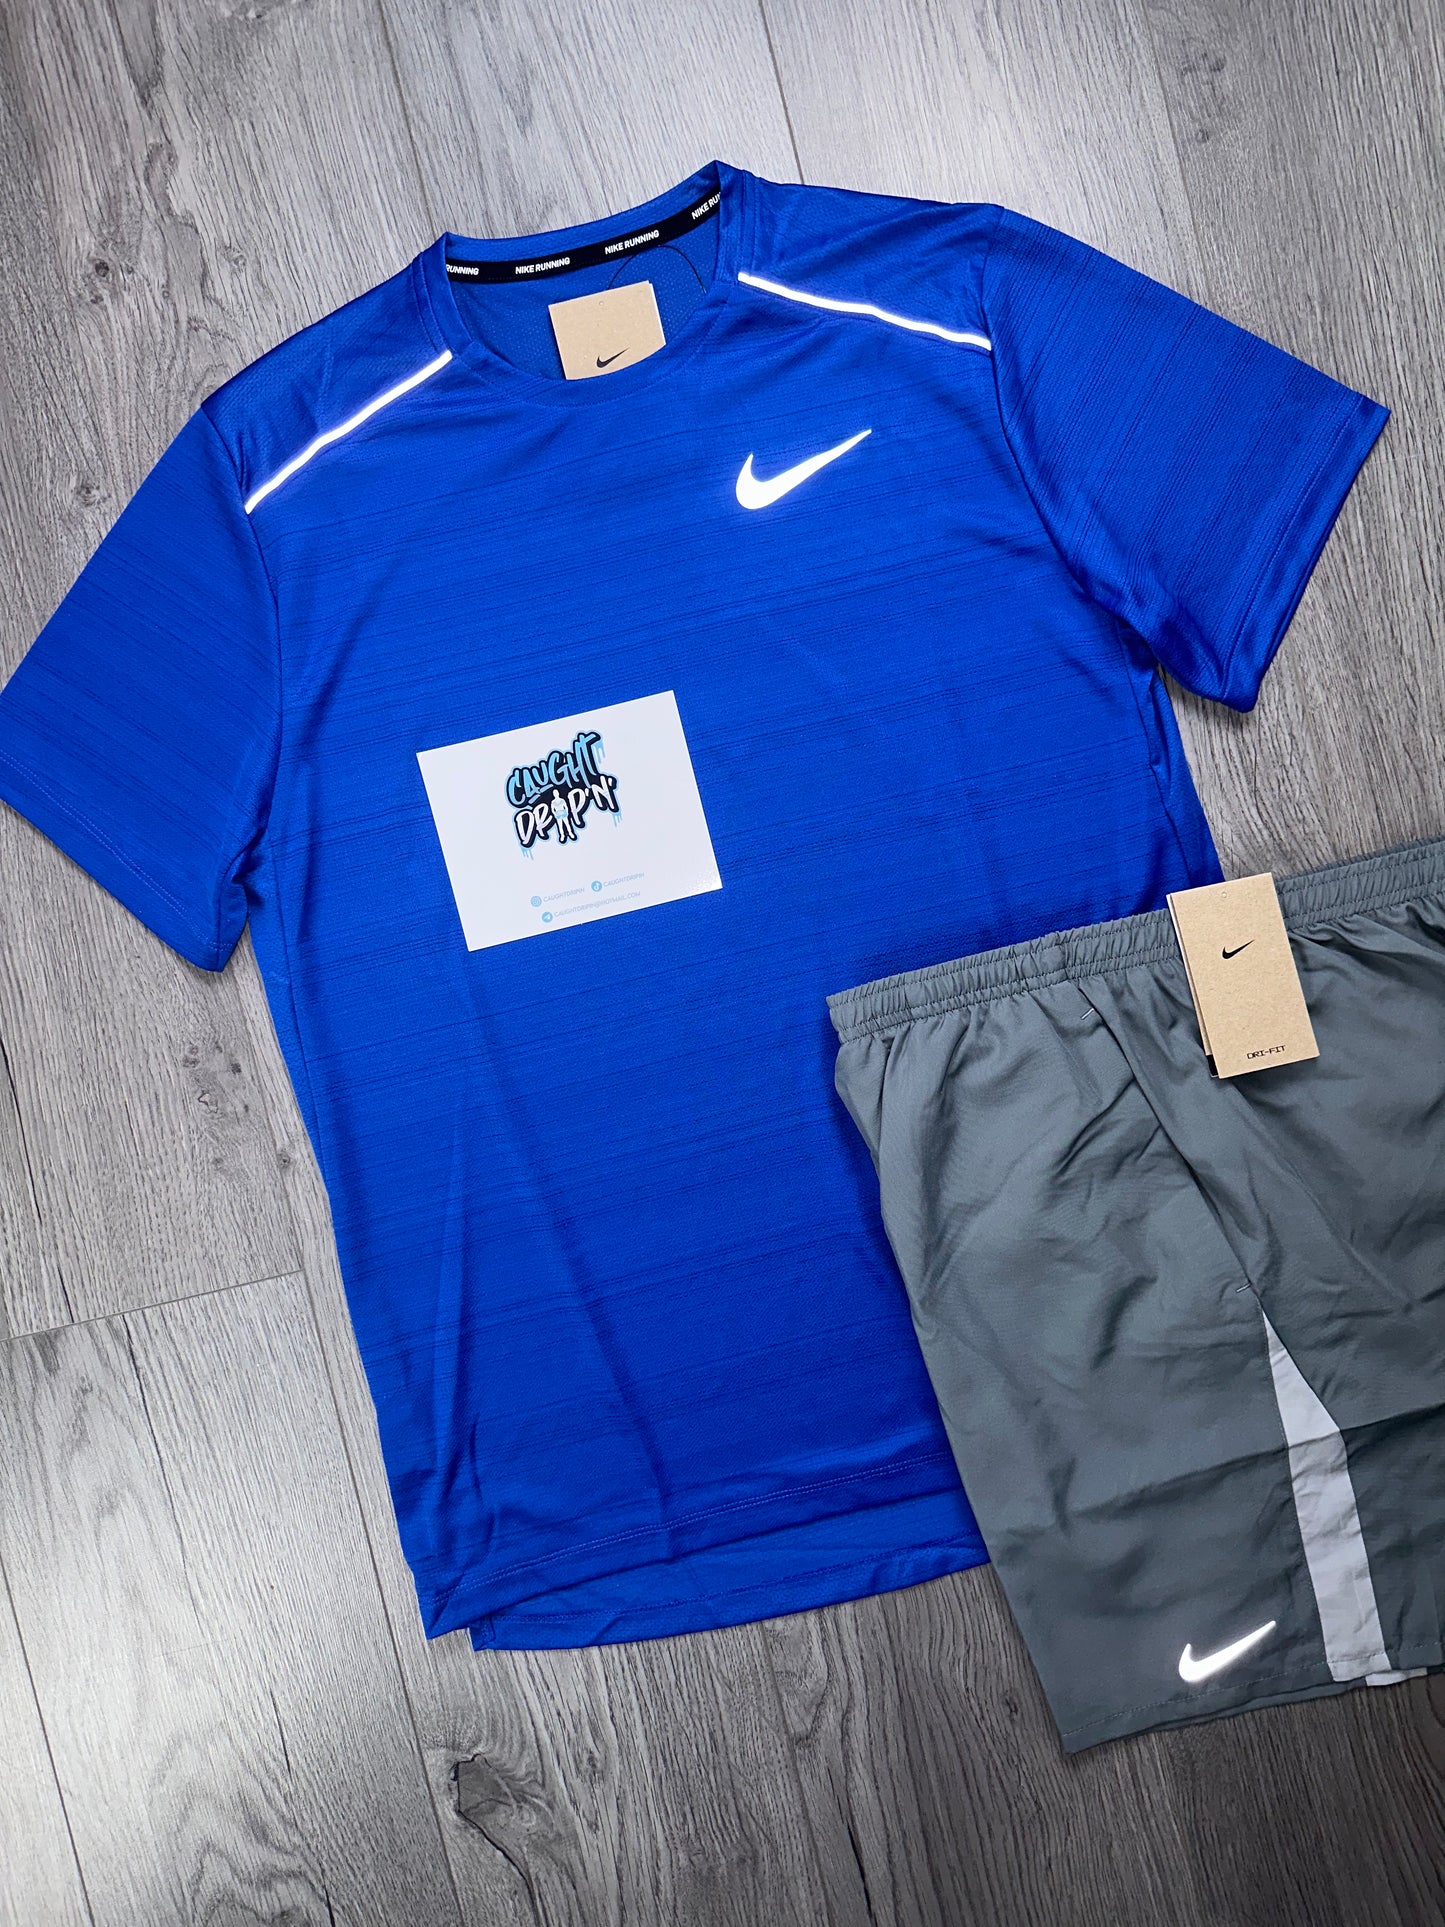 OG Royal Blue Nike Miler Set